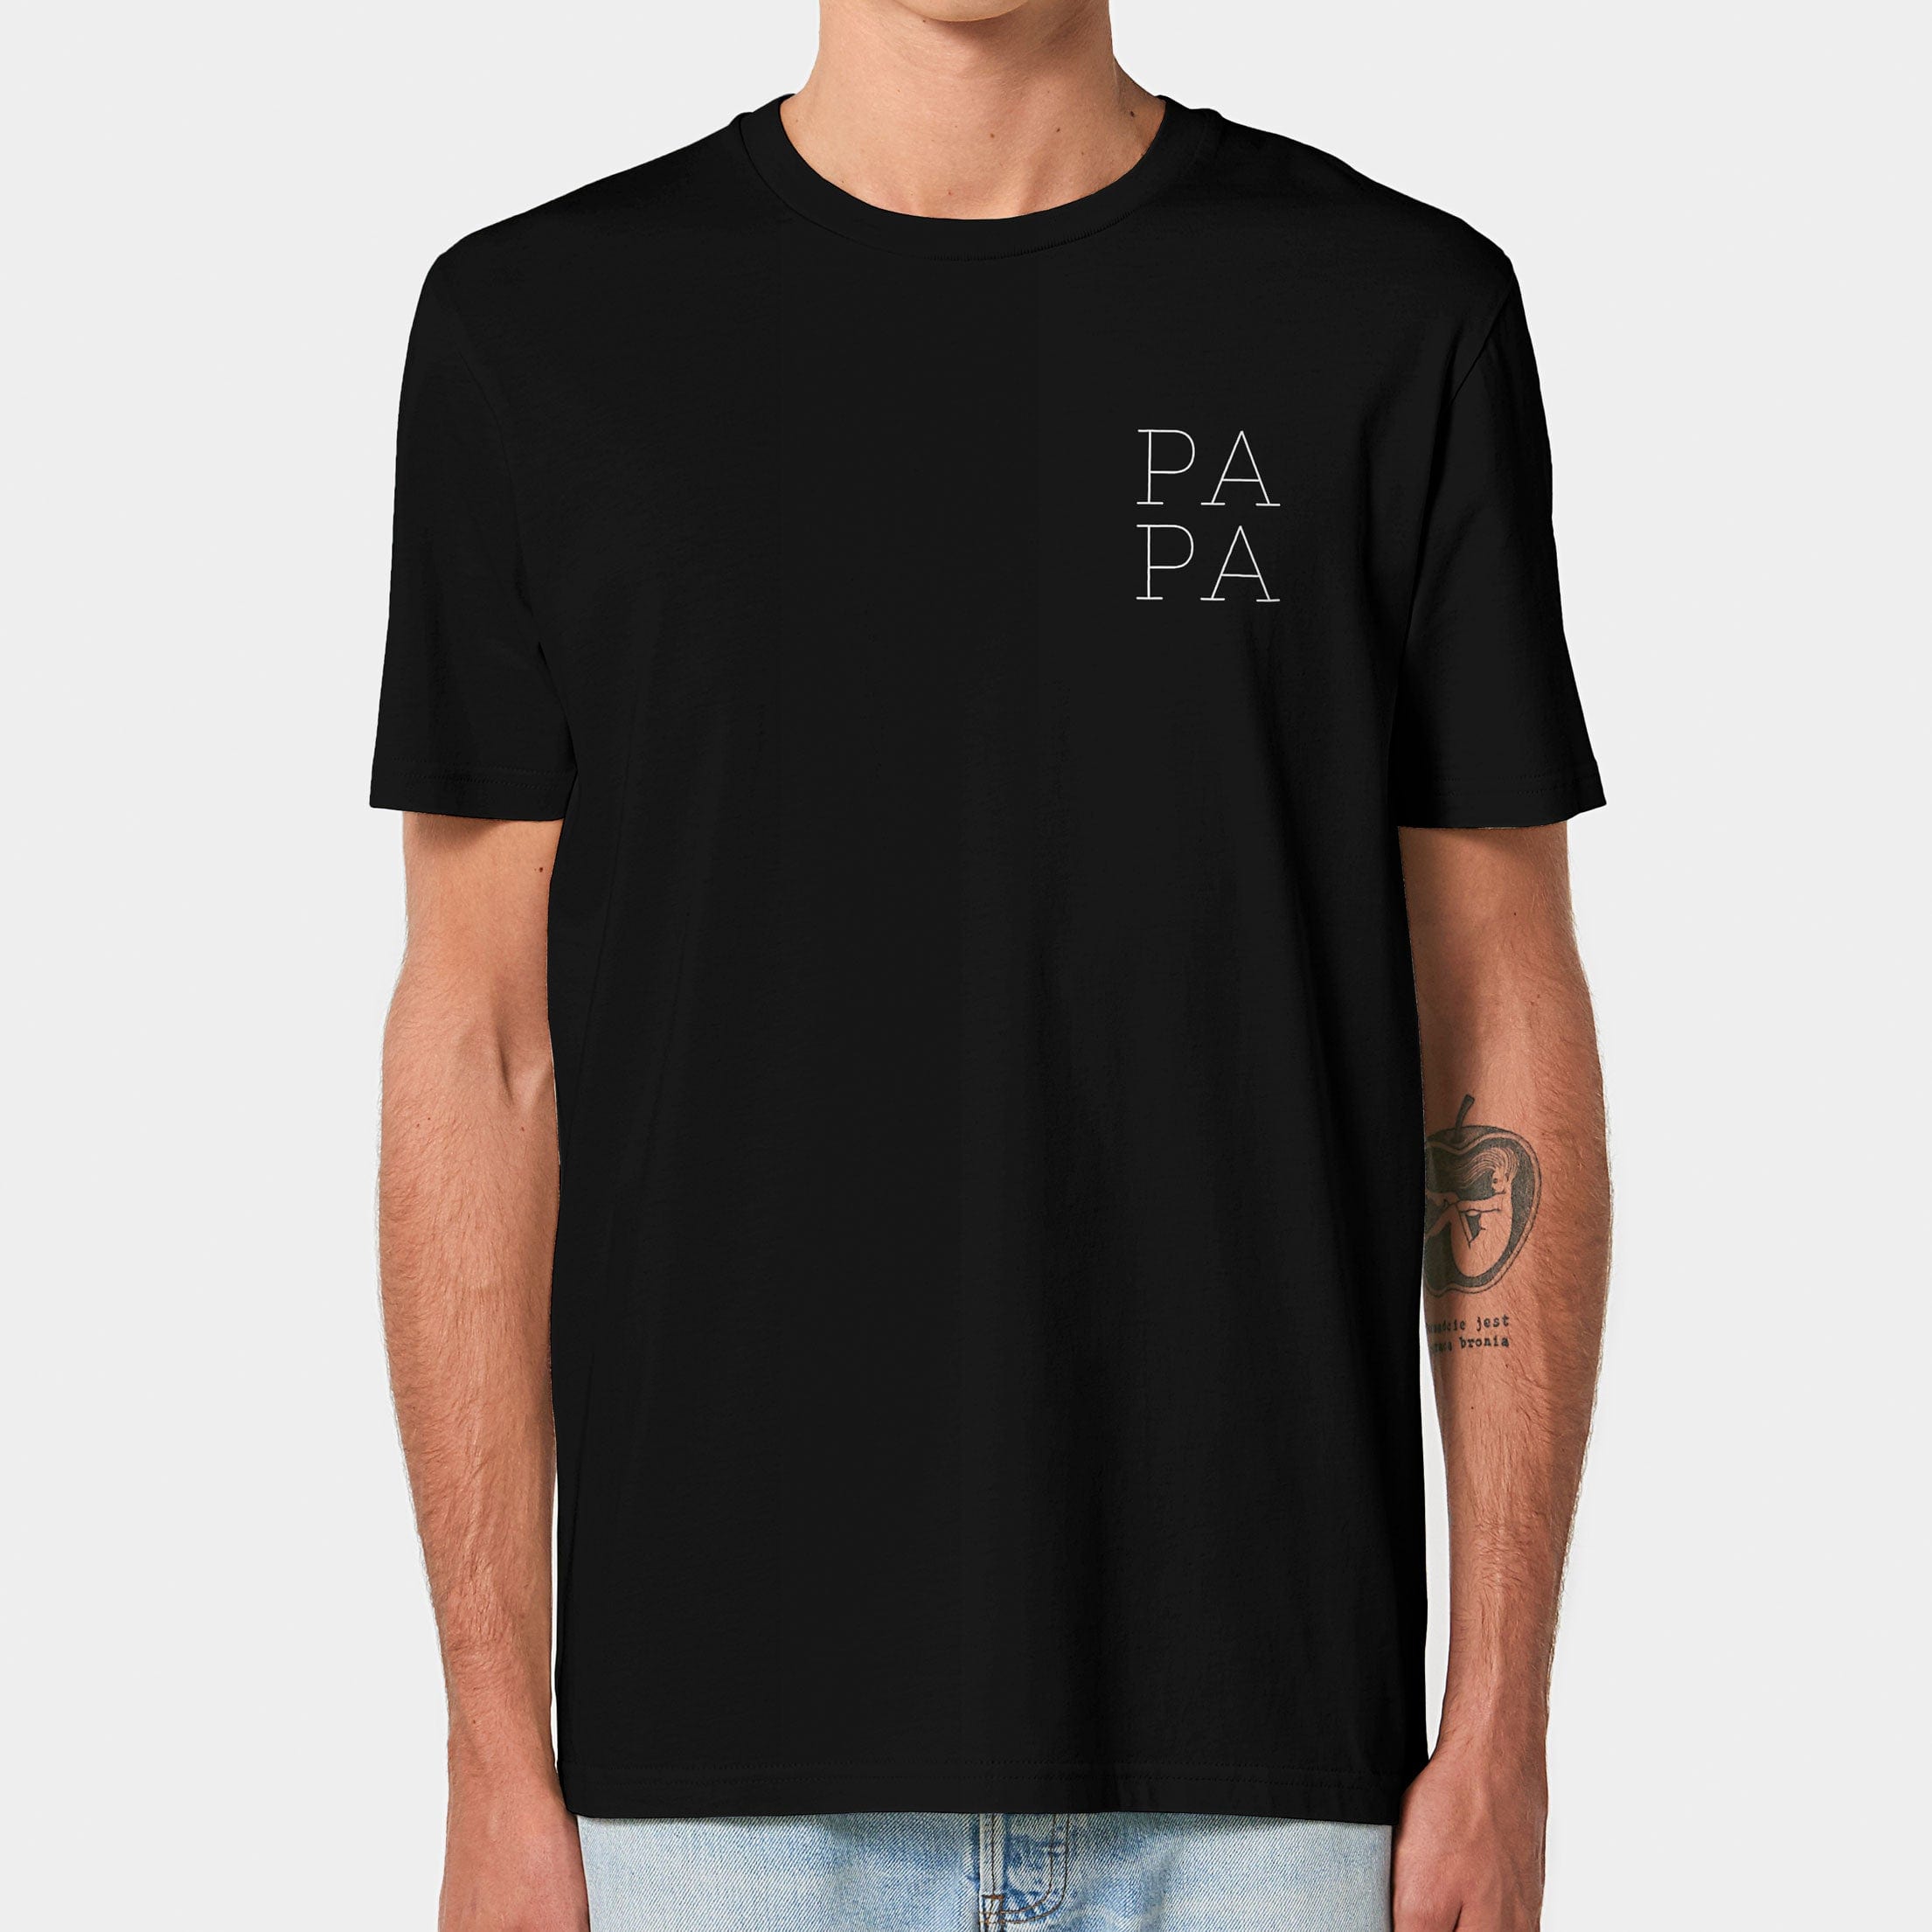 HEITER & LÄSSIG T-Shirt "Papa" S / schwarz - aus nachhaltiger und fairer Produktion